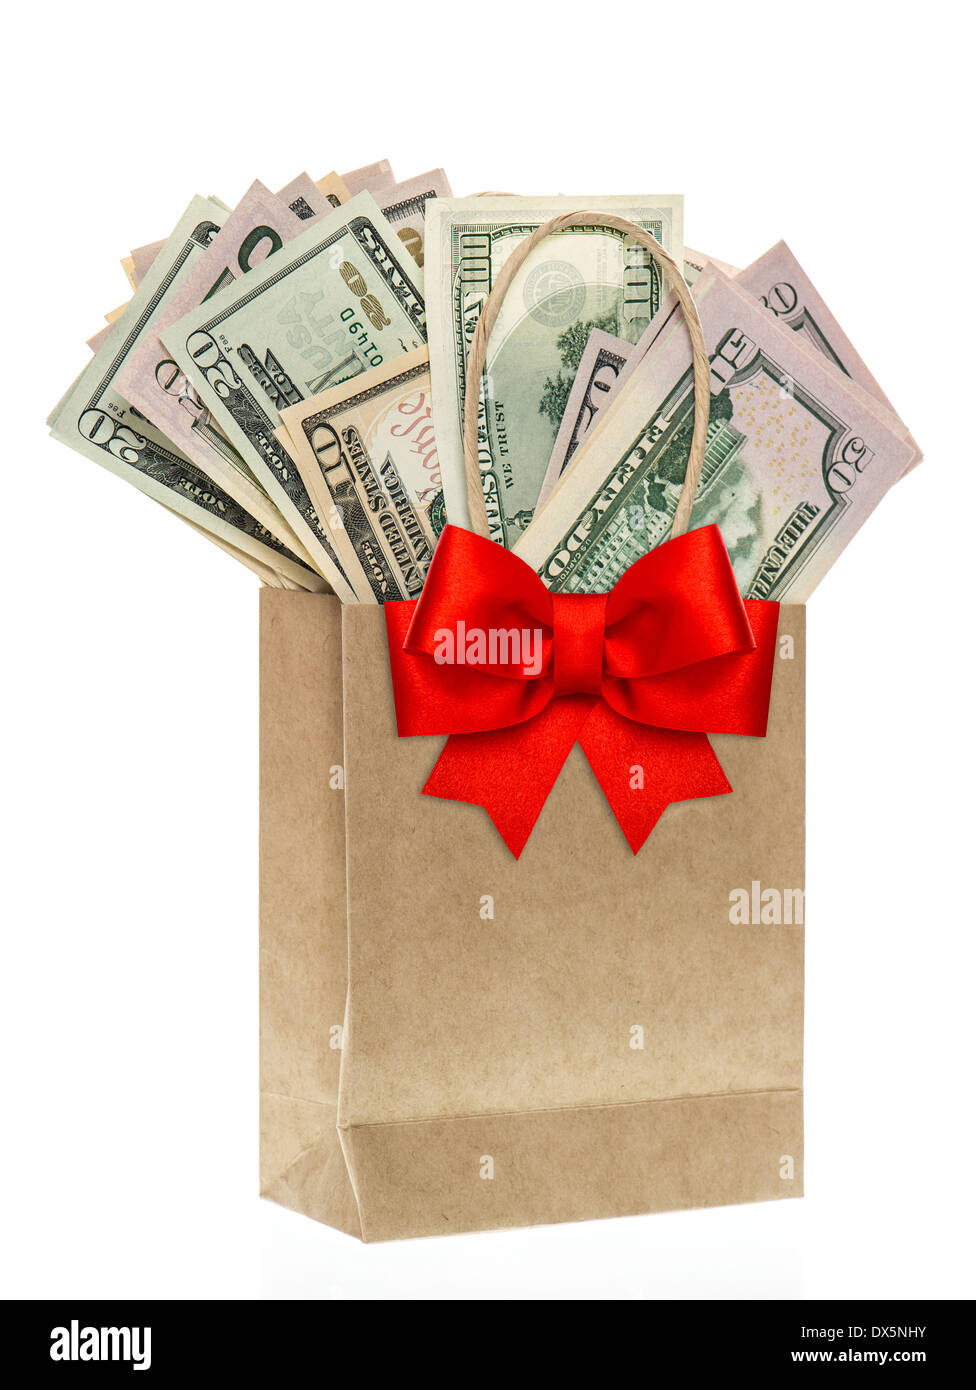 Sacchetto di carta con dollari americani e Ribon rosso decorazione di prua. shopping natalizio concept Foto Stock